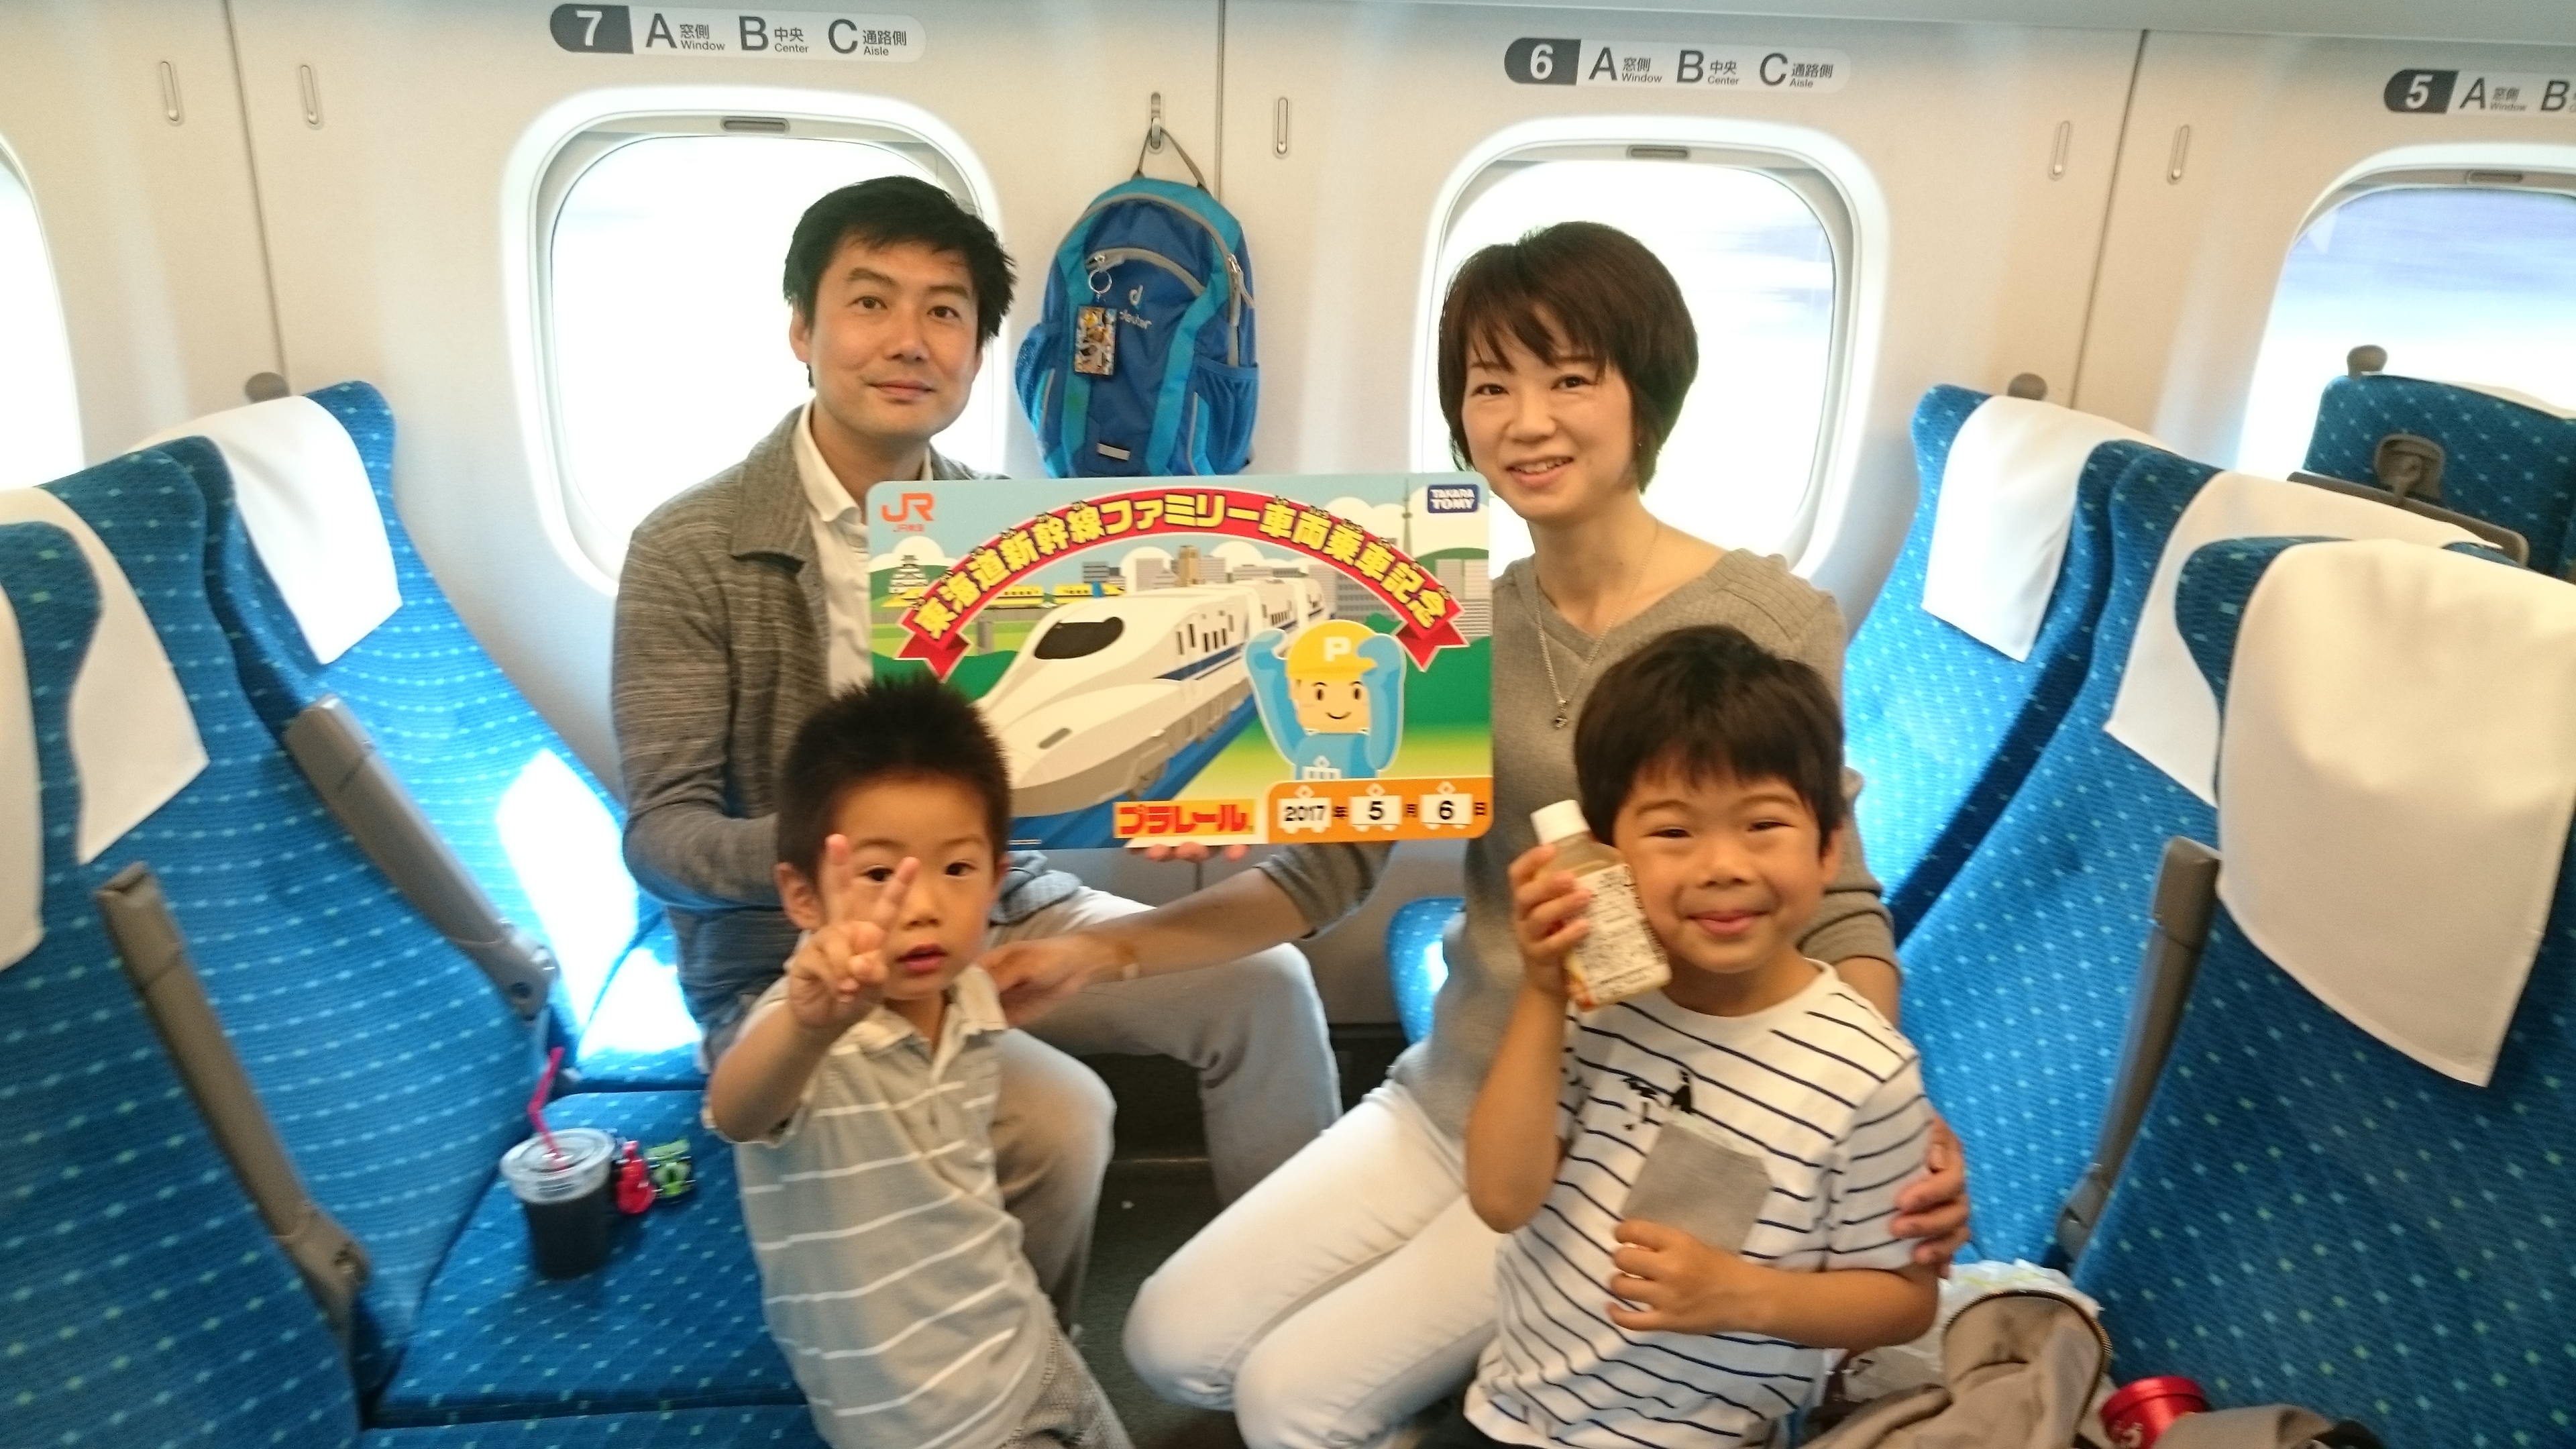 年末年始の新幹線帰省に! 家族客貸し切り車両で快適、1席サービスの特典も